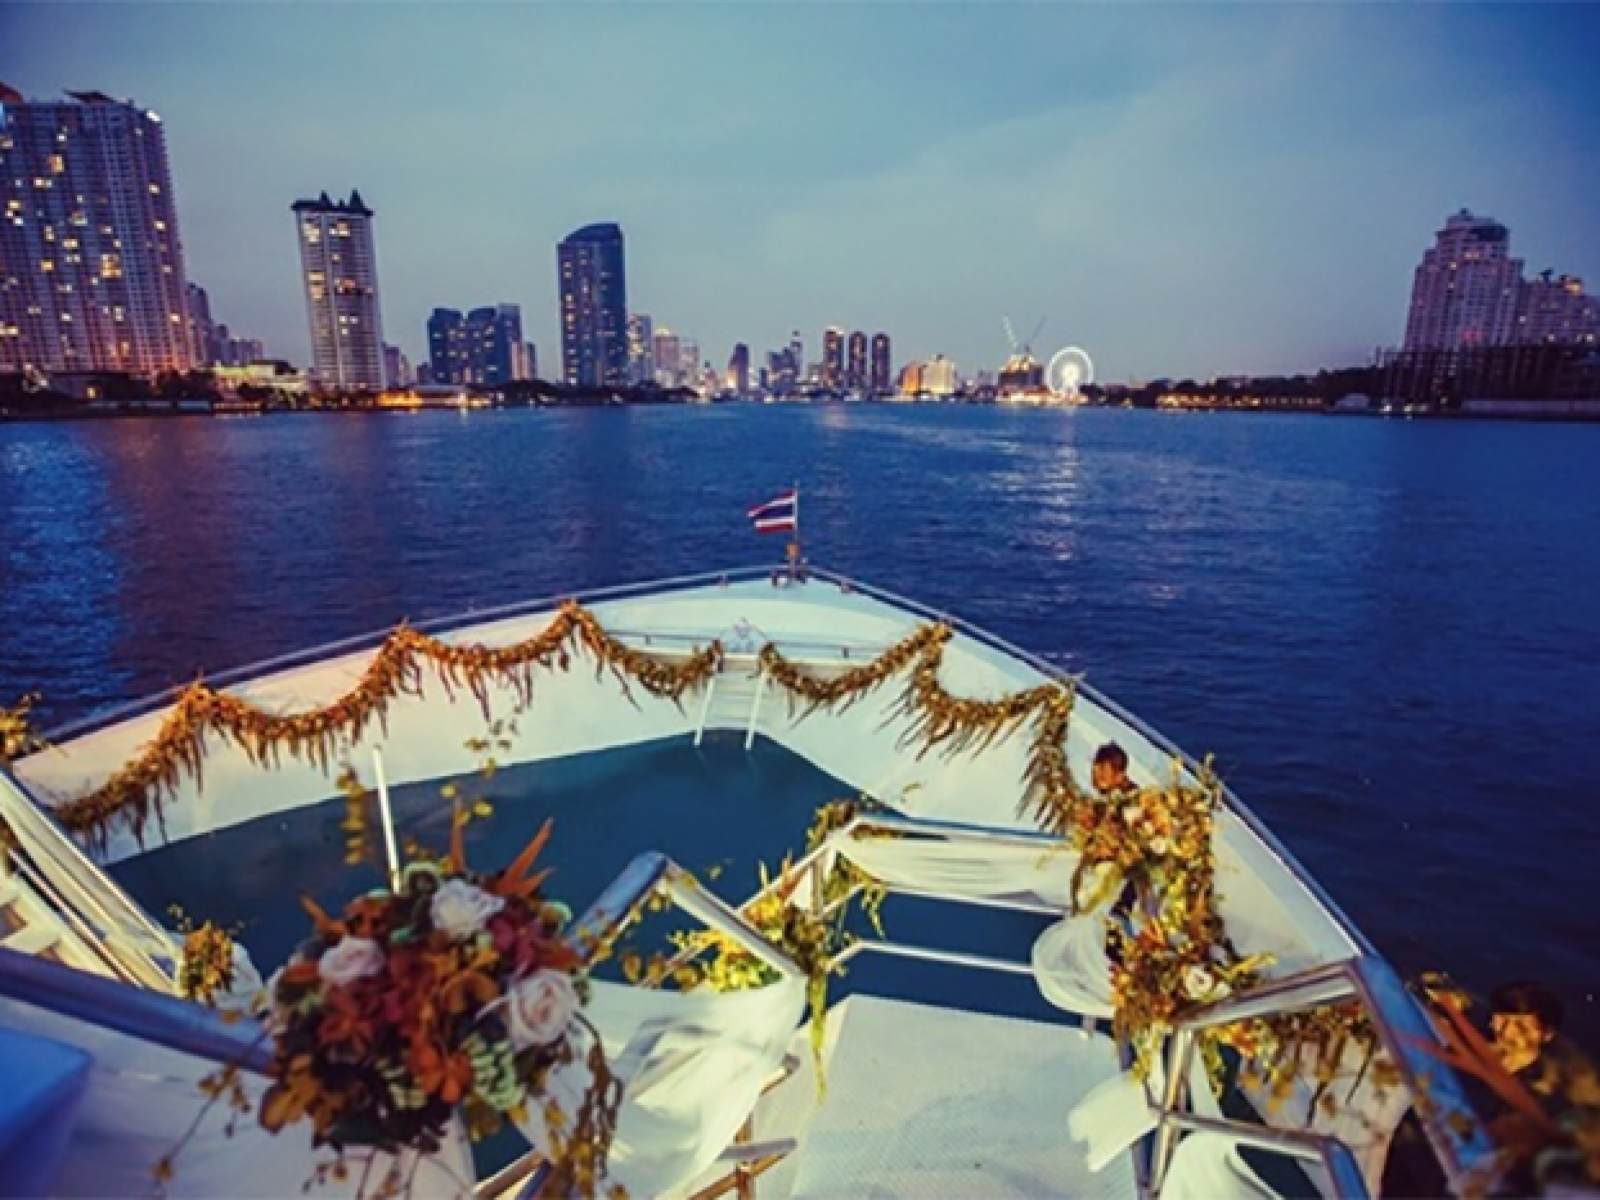 泰国曼谷 湄南之星公主号夜游湄南河 River Star Princess Cruise